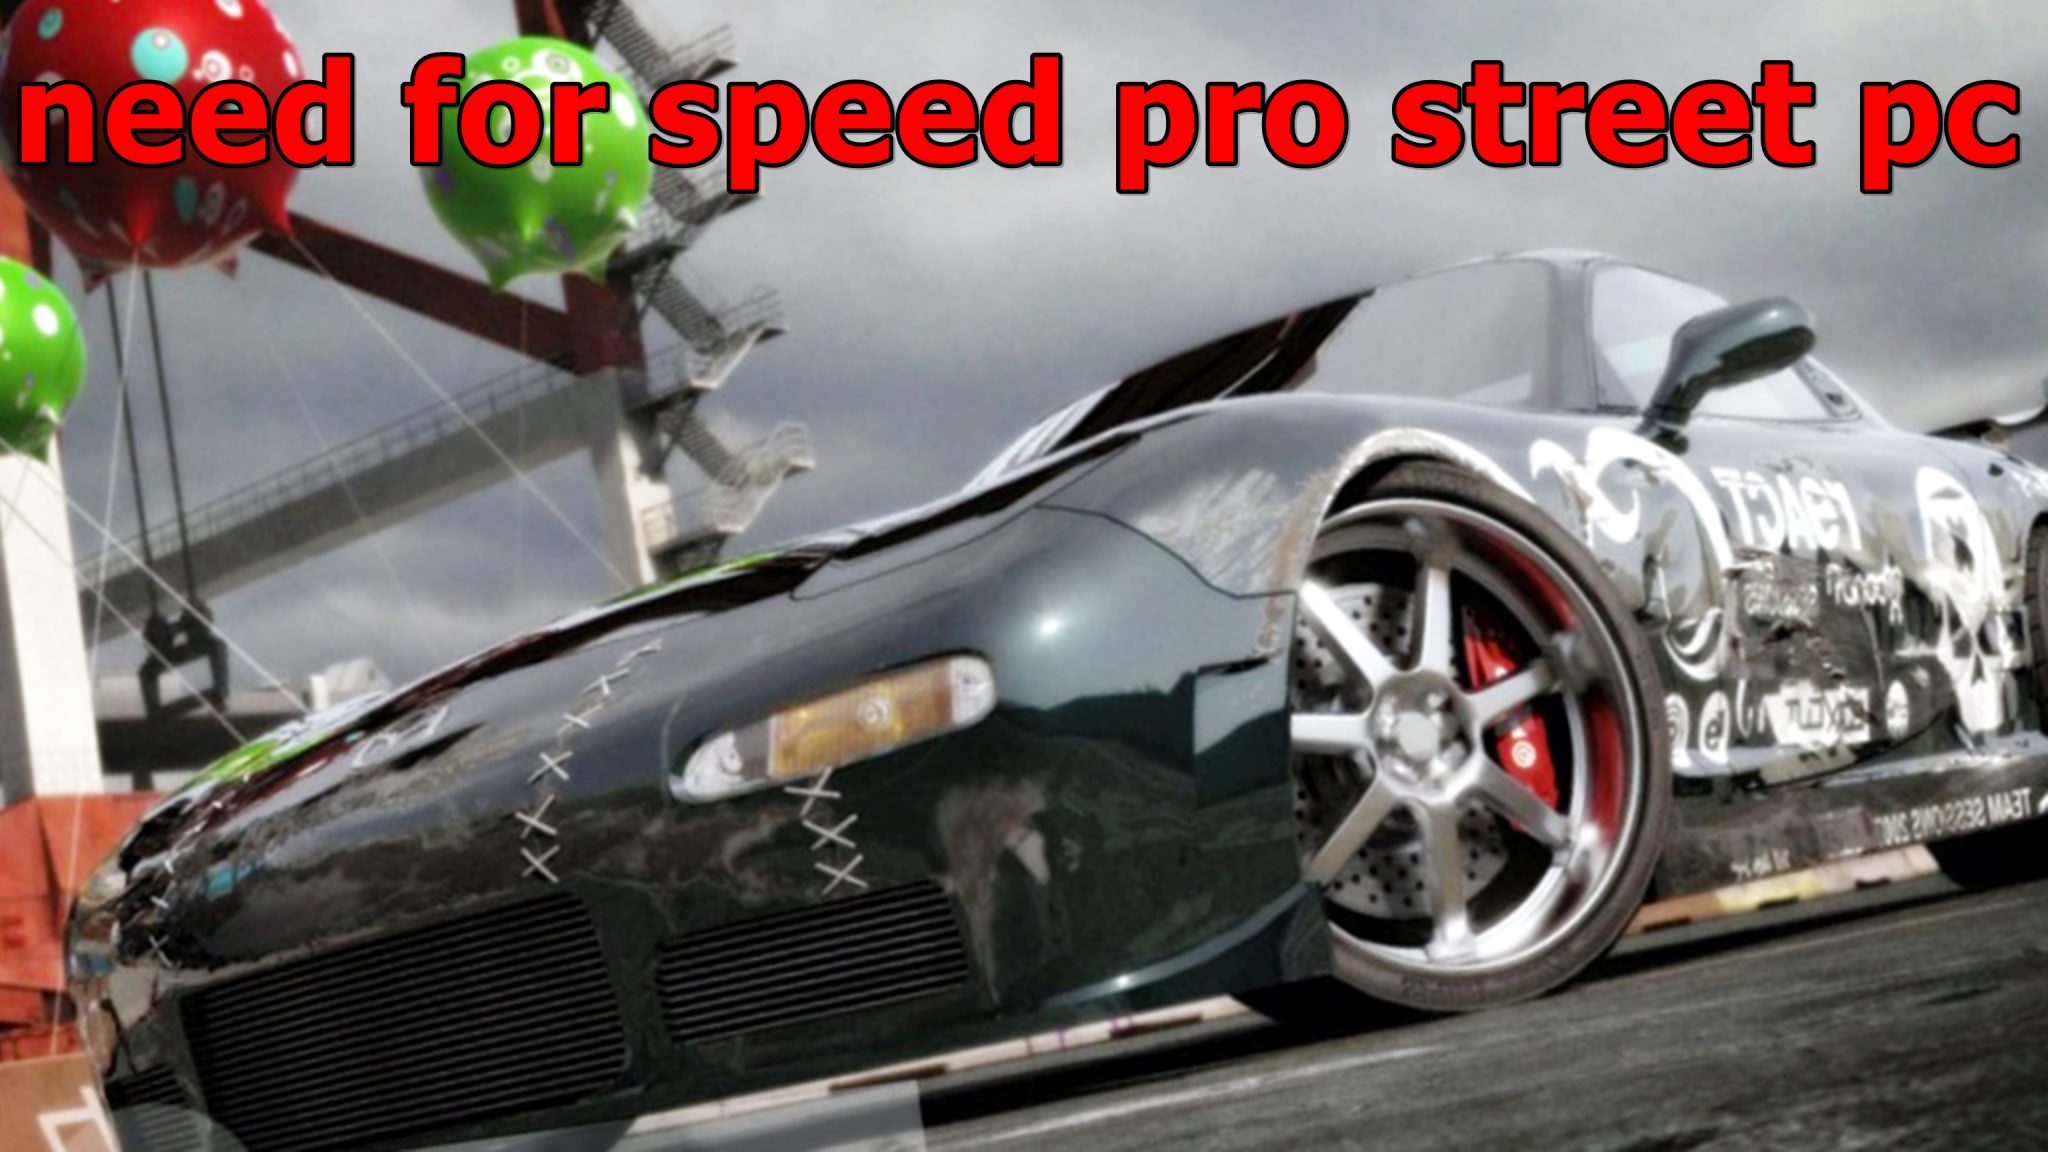 need for speed pro street pc fan patch